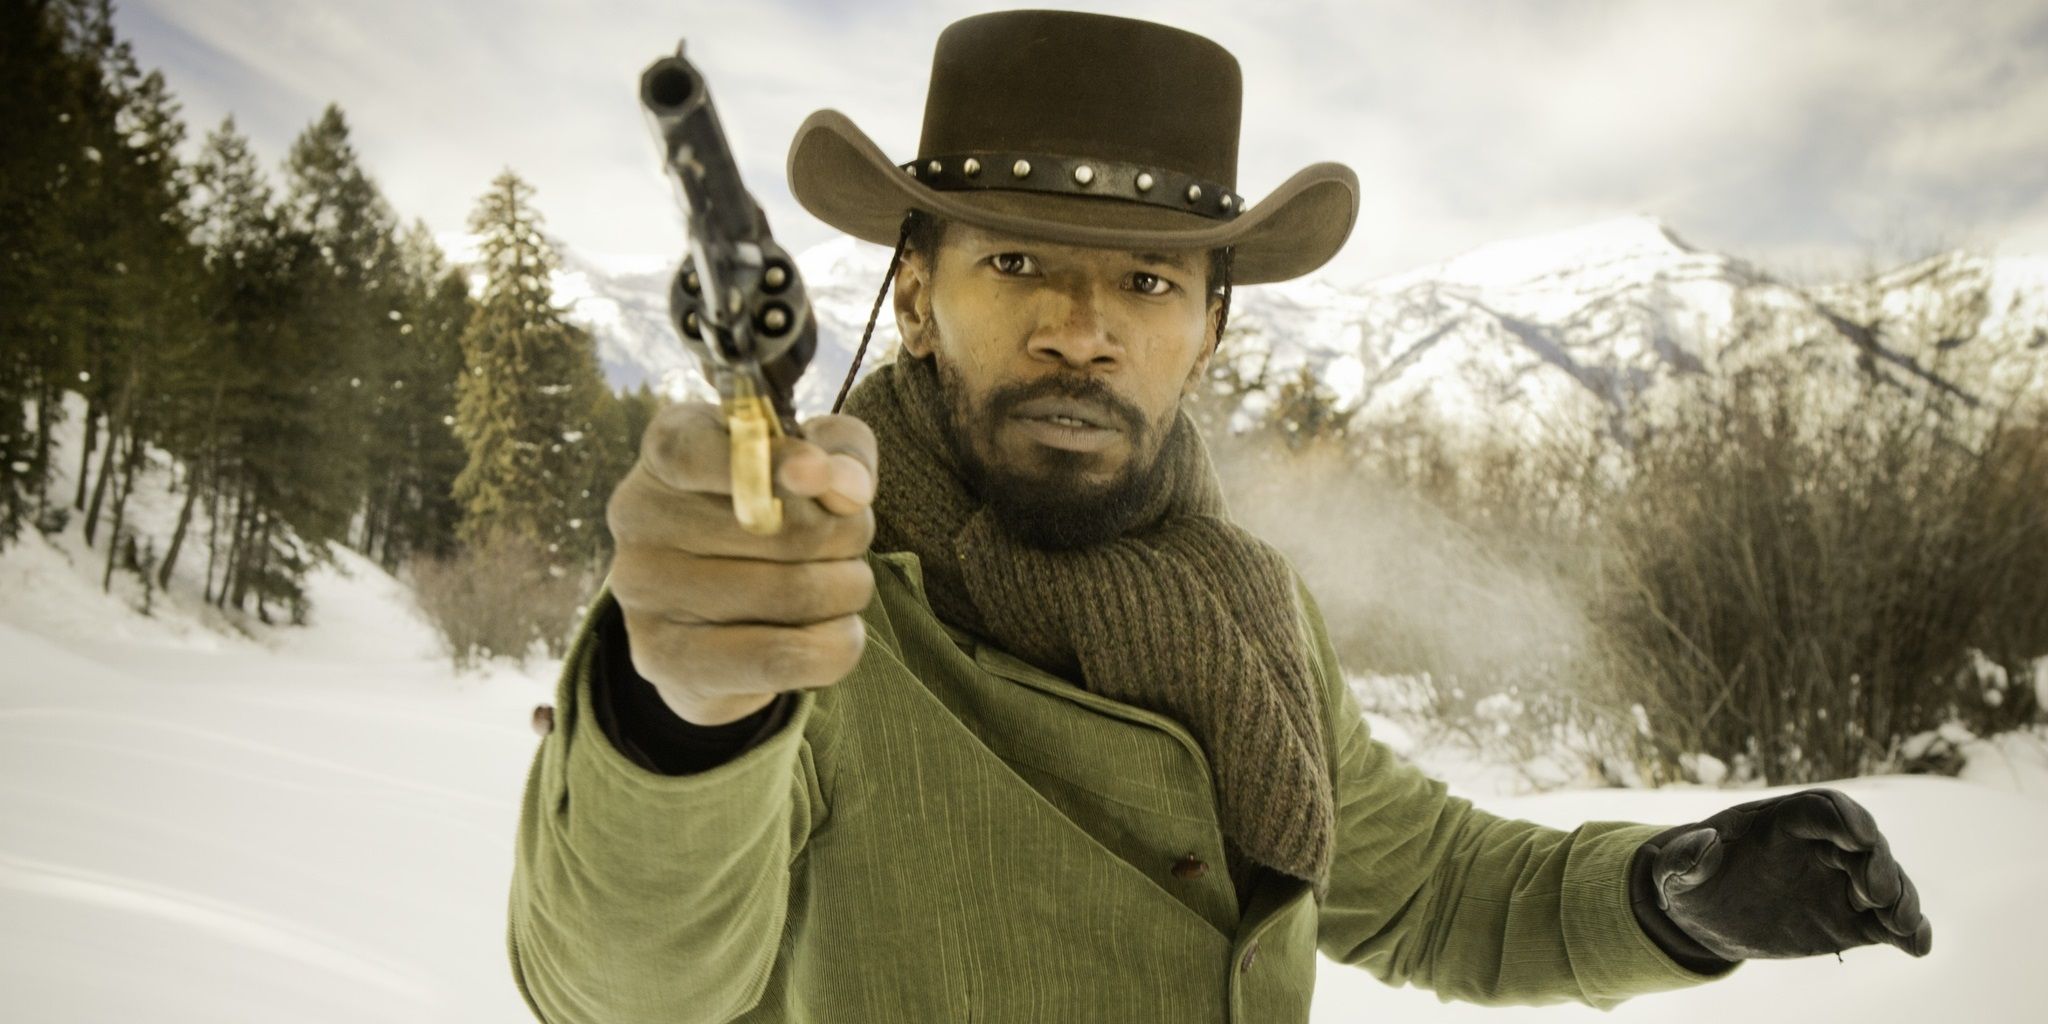 Jamie Foxx as Django in the snow in Django Unchained